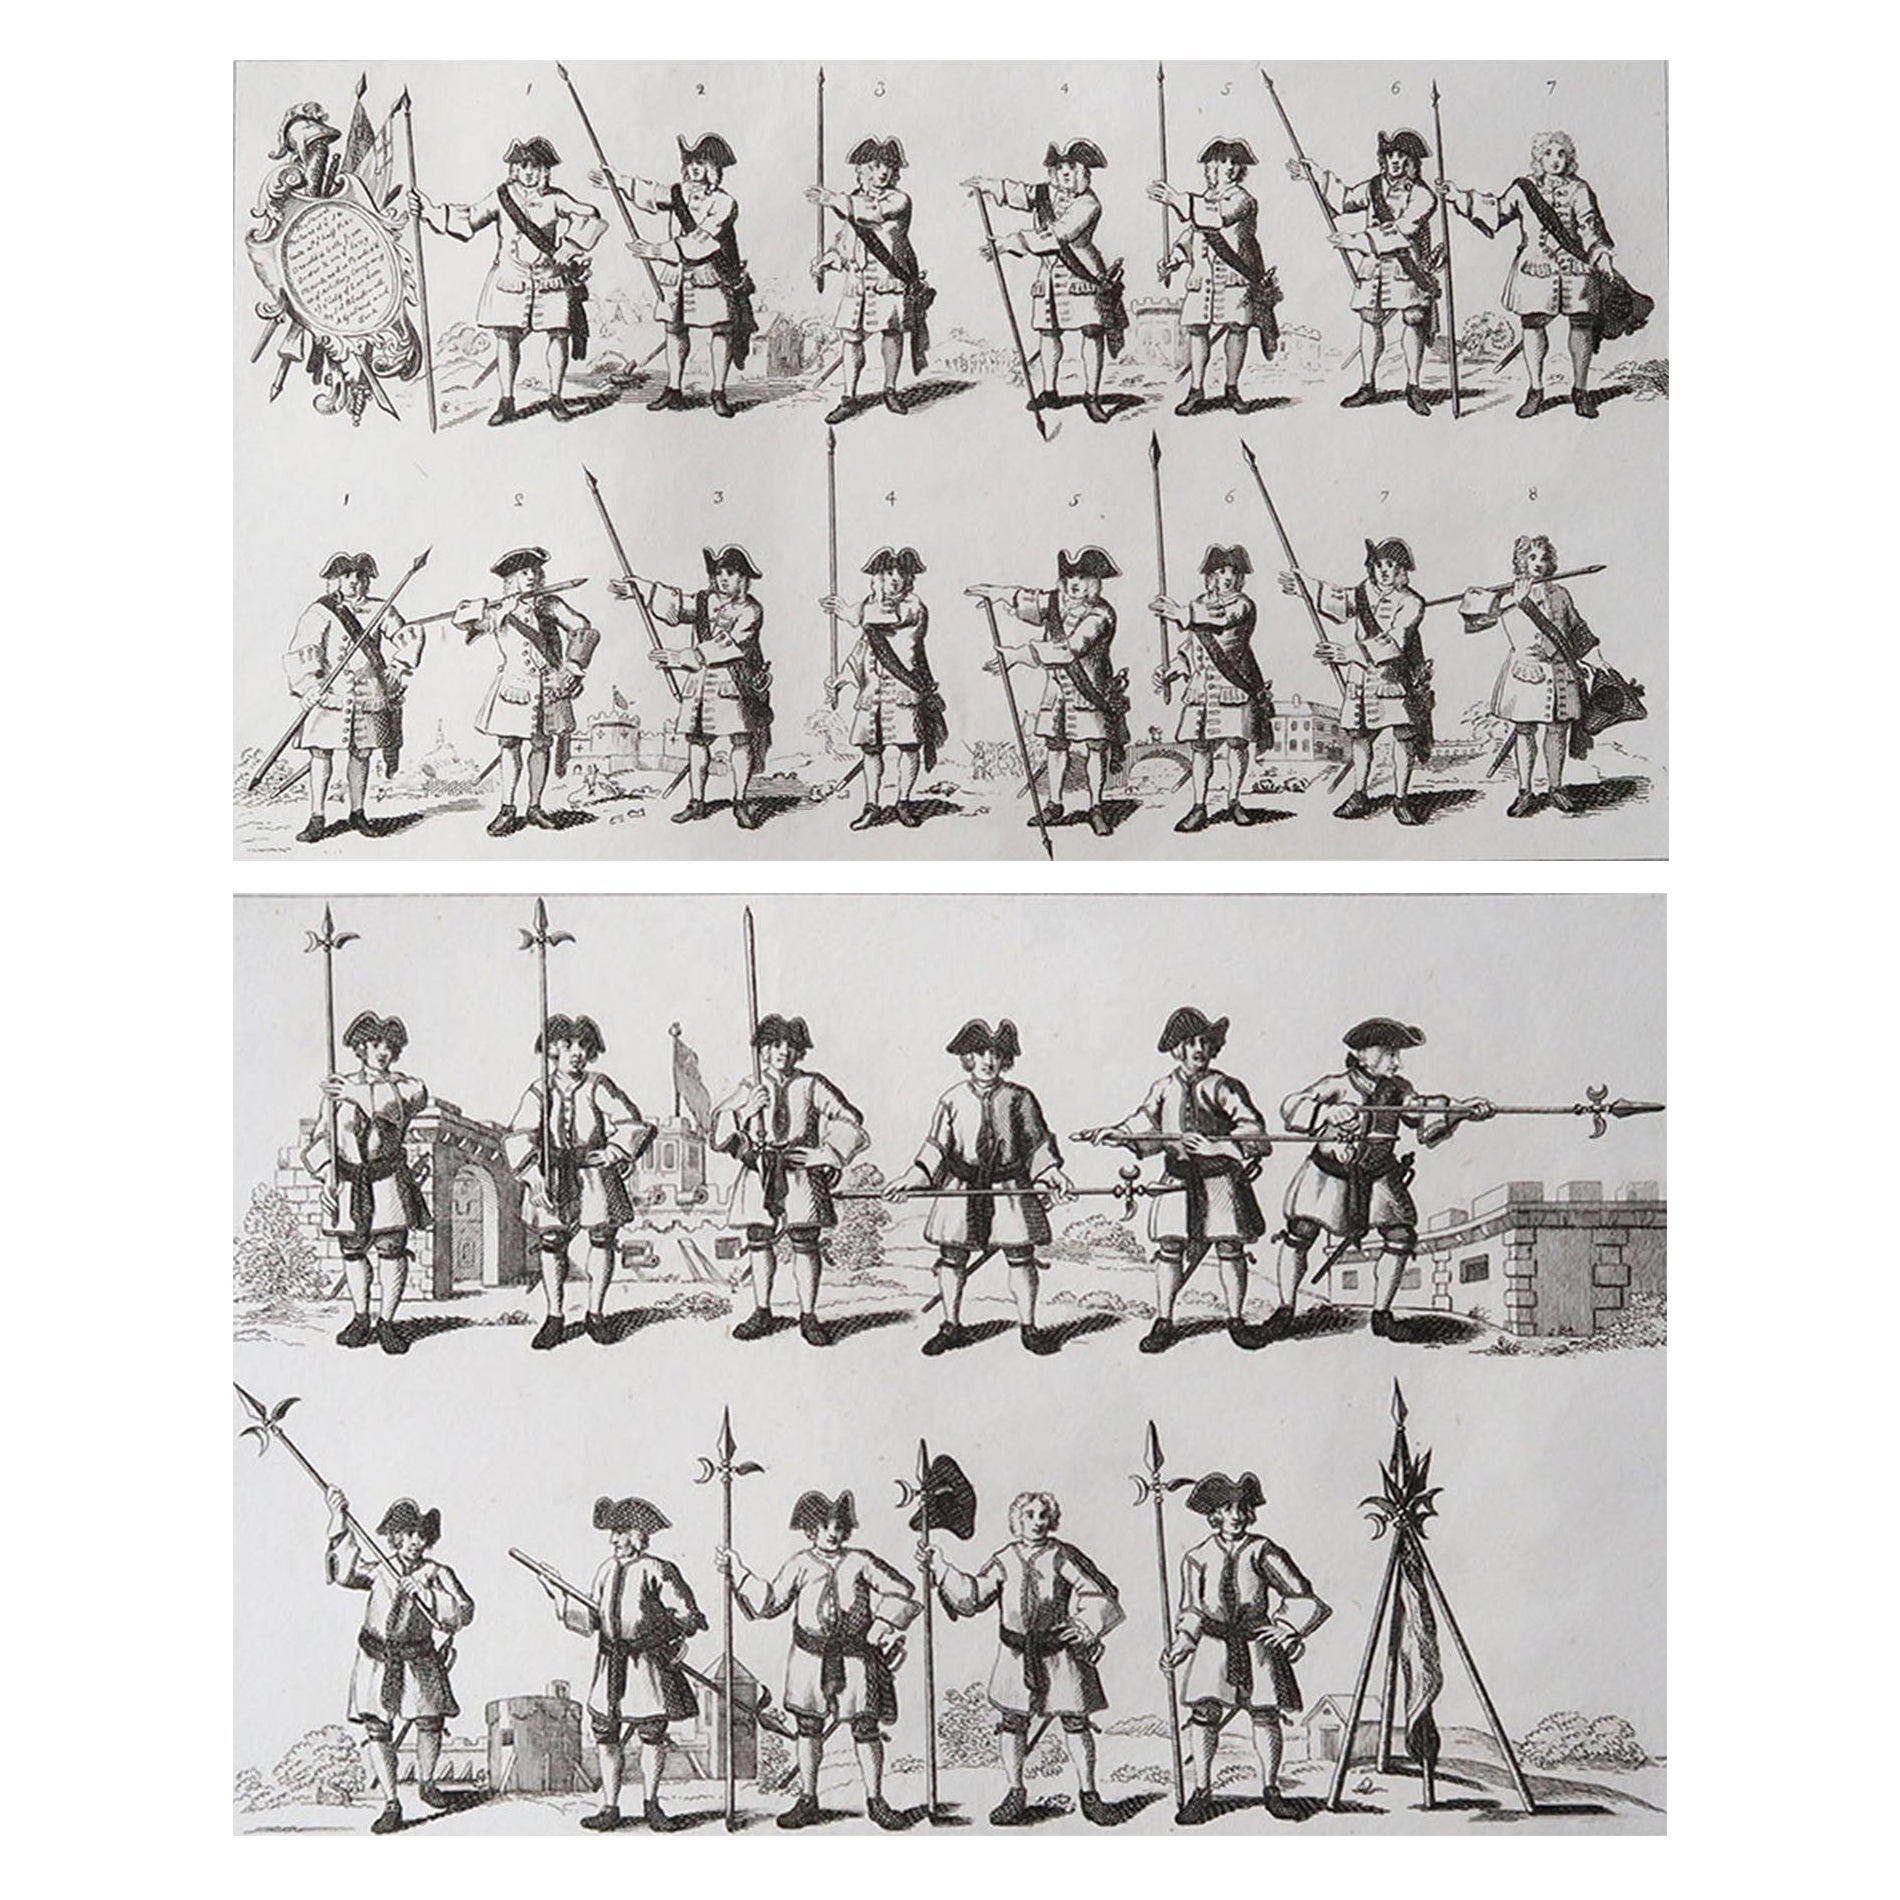 Pair of Original Antique Prints After William Hogarth, "Military Figures", 1807